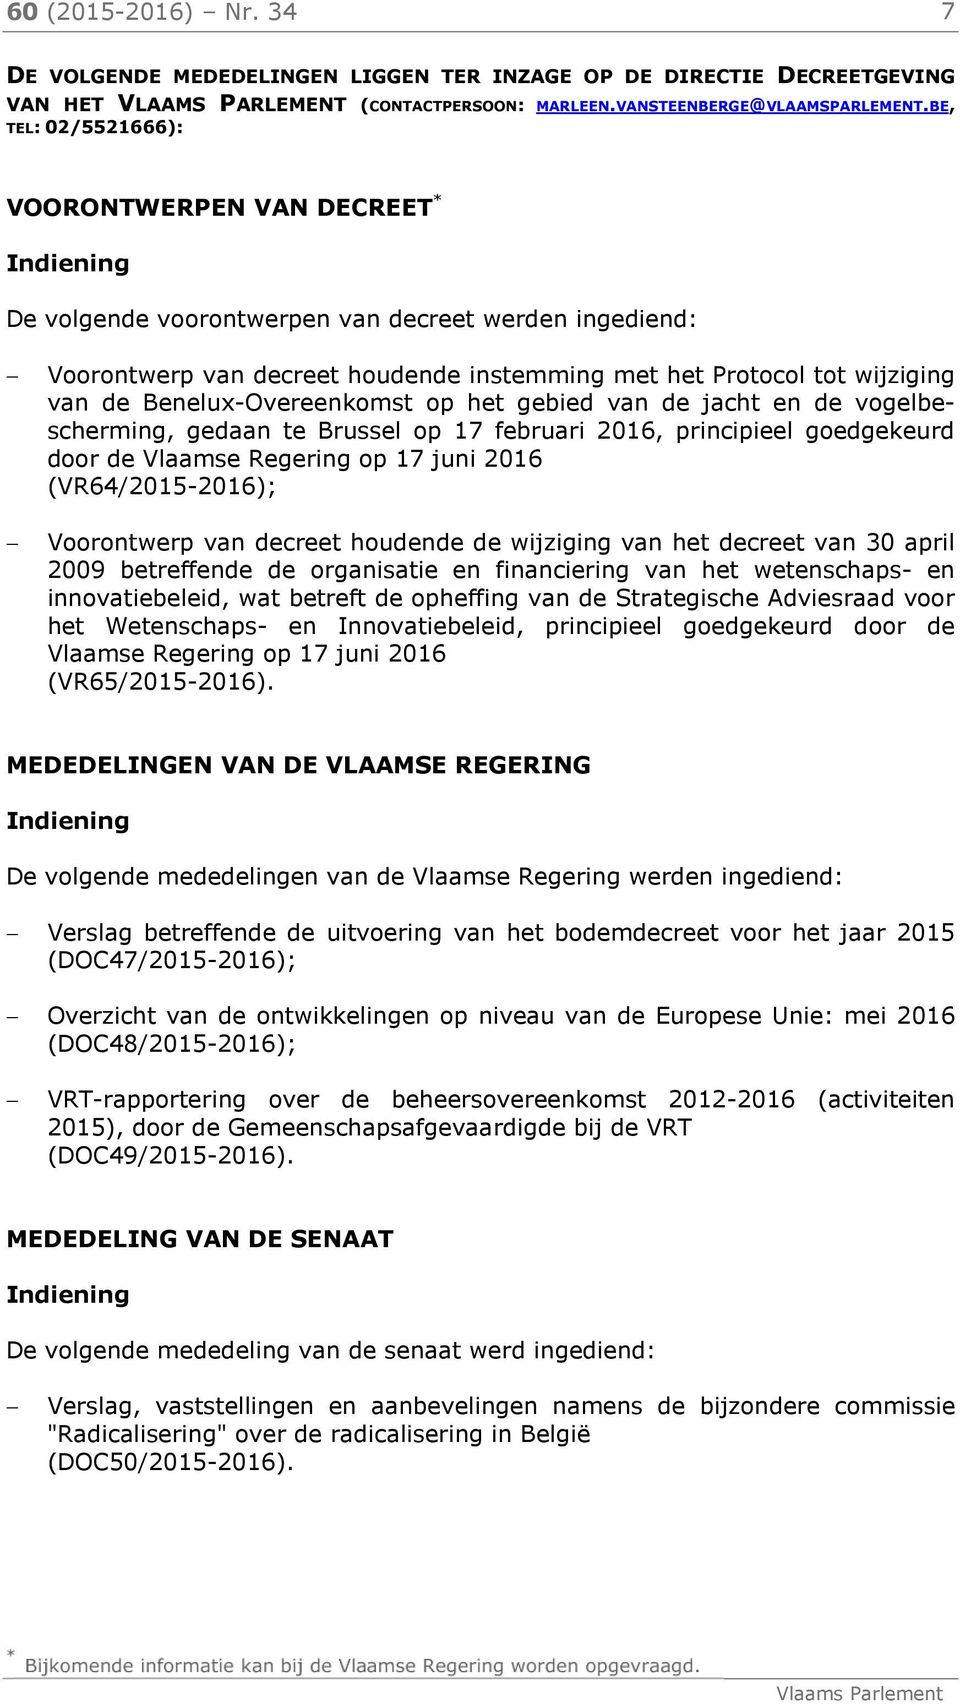 Benelux-Overeenkomst op het gebied van de jacht en de vogelbescherming, gedaan te Brussel op 17 februari 2016, principieel goedgekeurd door de Vlaamse Regering op 17 juni 2016 (VR64/2015-2016);